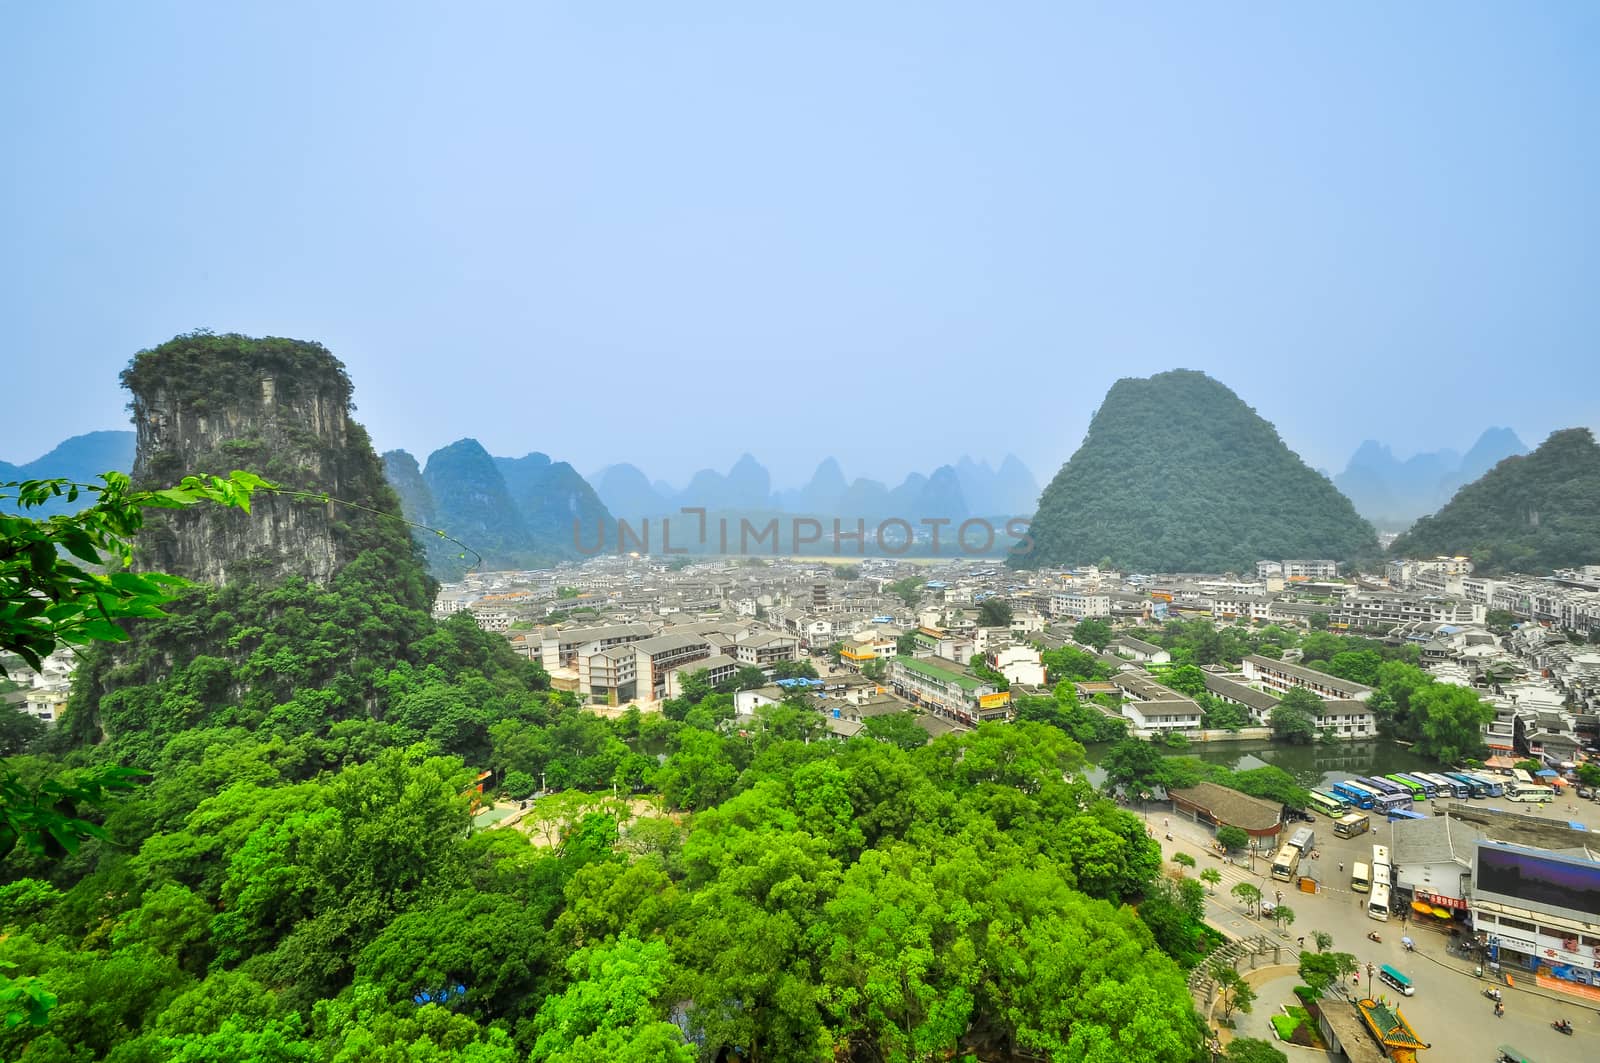 Yangshuo City guangxi province near guilin by weltreisendertj